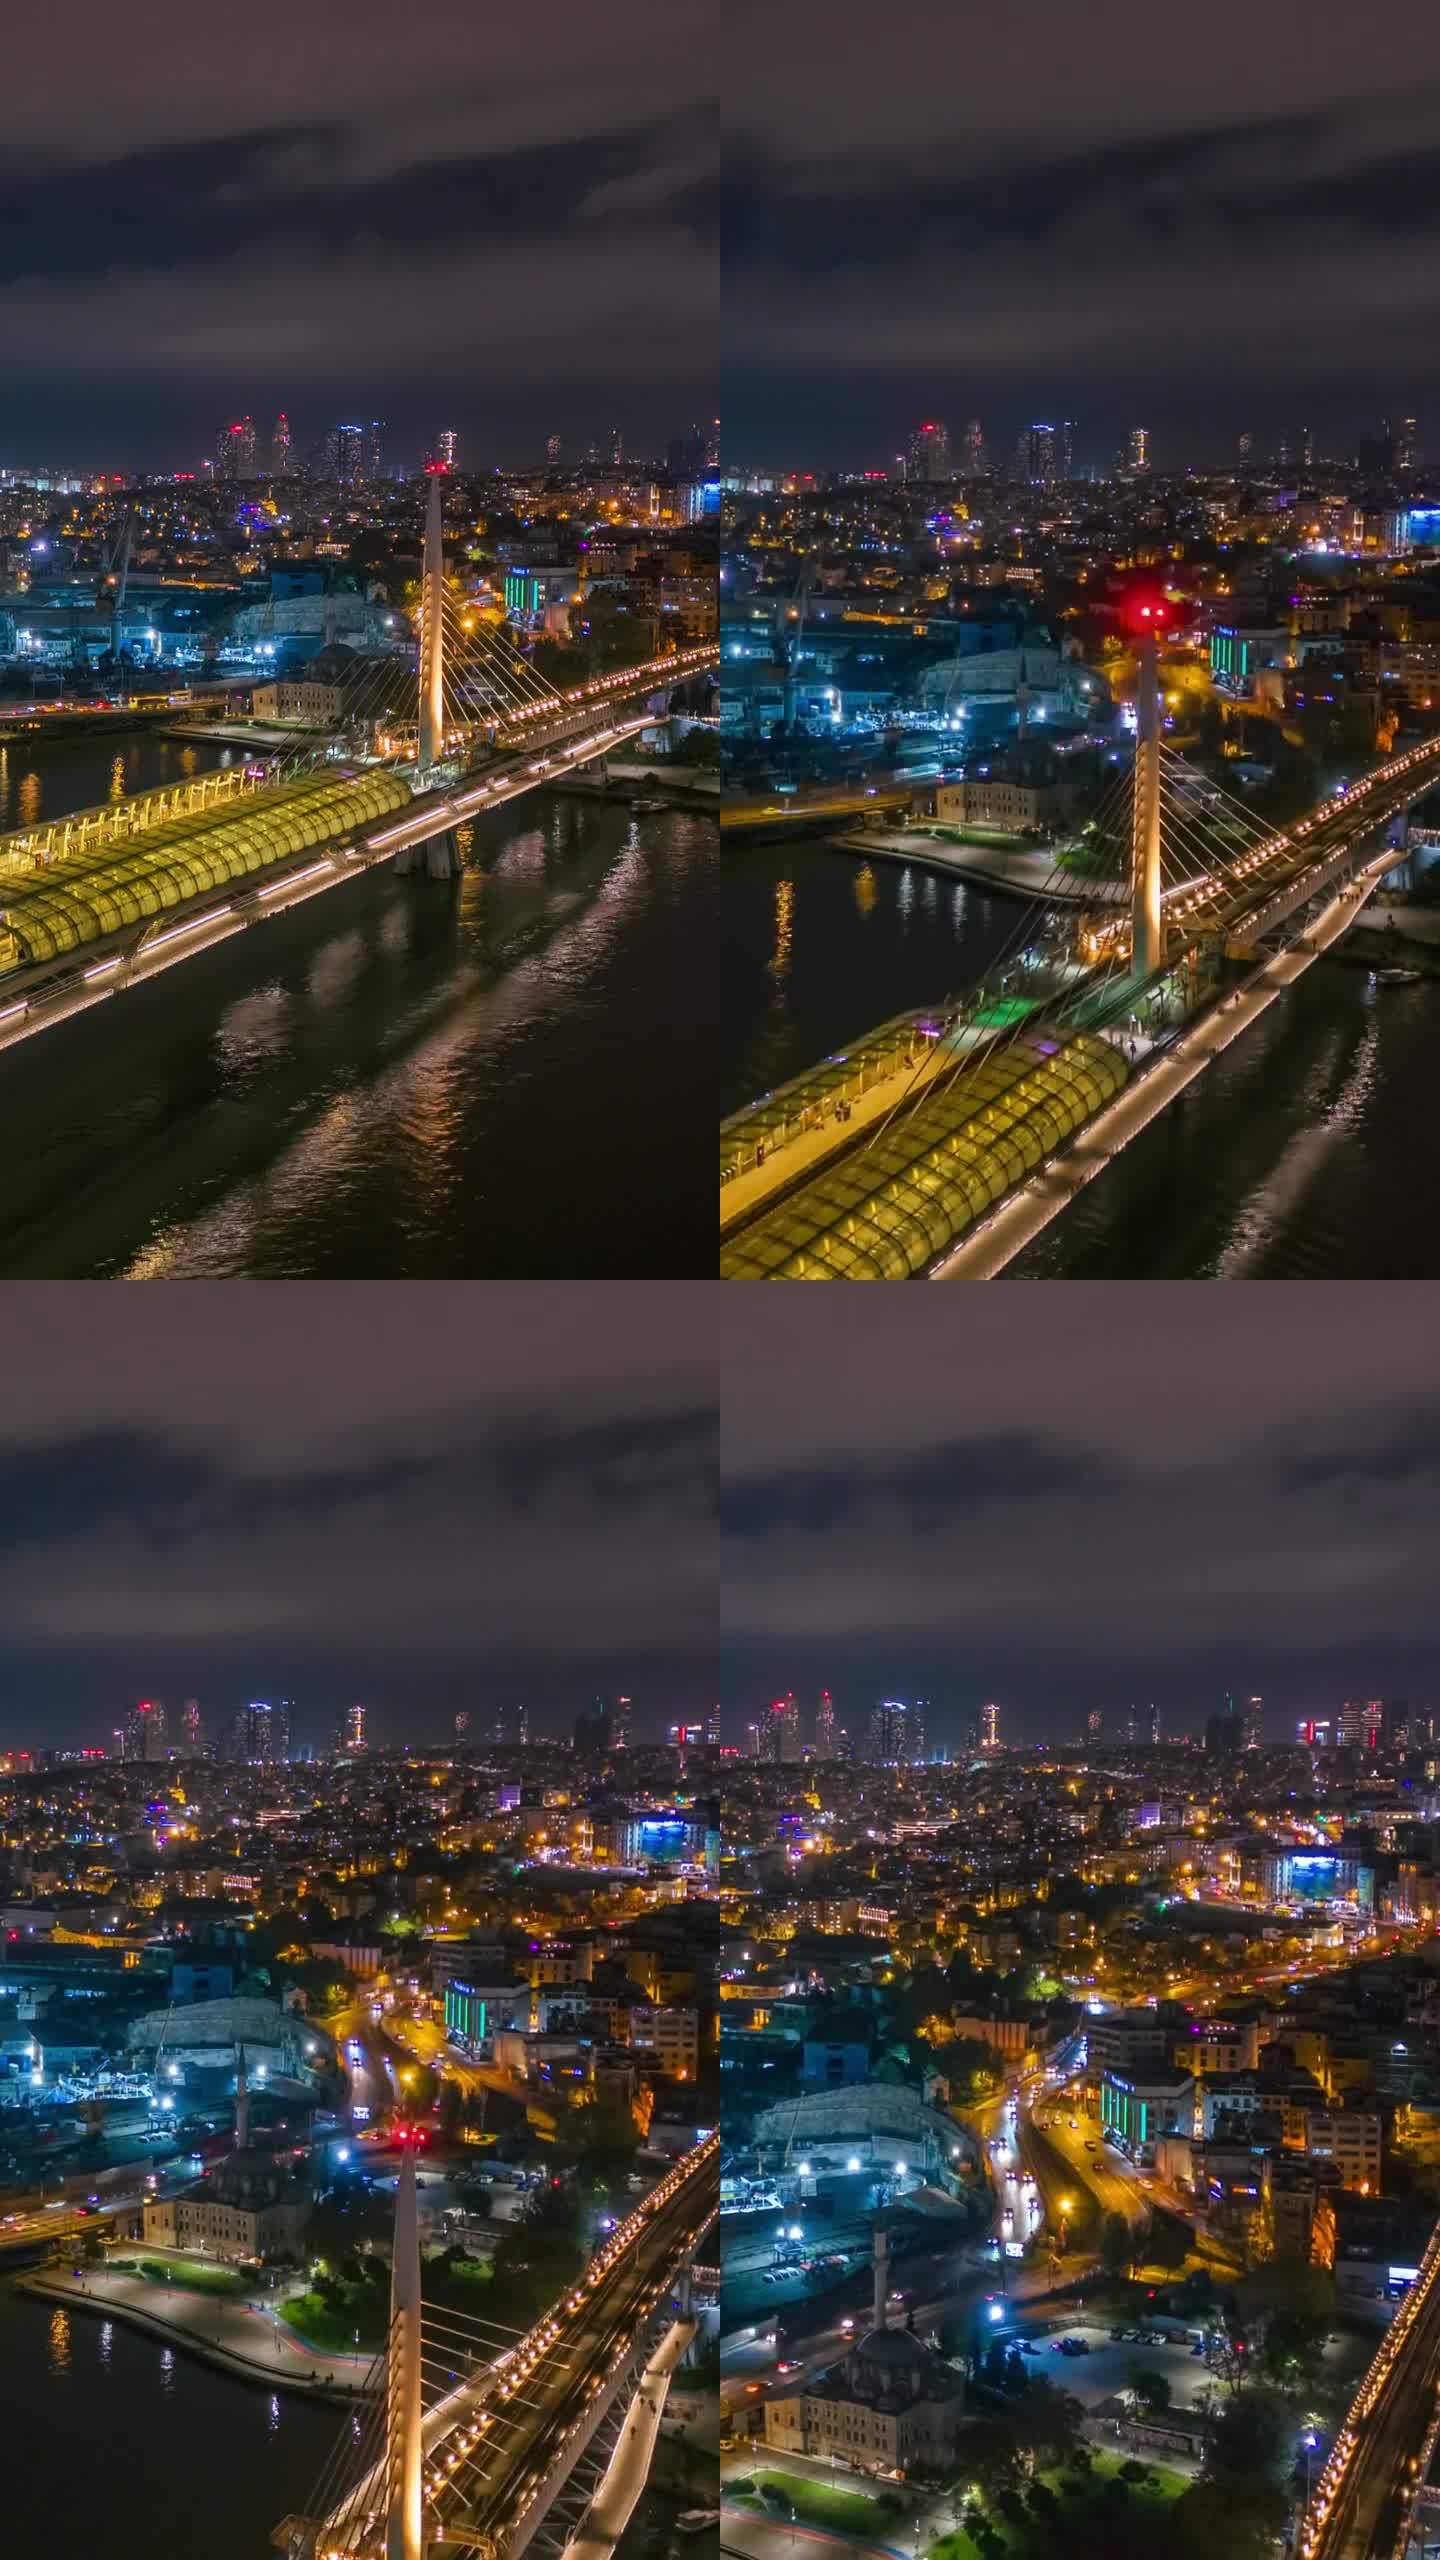 空中超缩:金角桥-伊斯坦布尔两座桥的夜间空中交响曲#IstanbulGoldenHorn #Gold